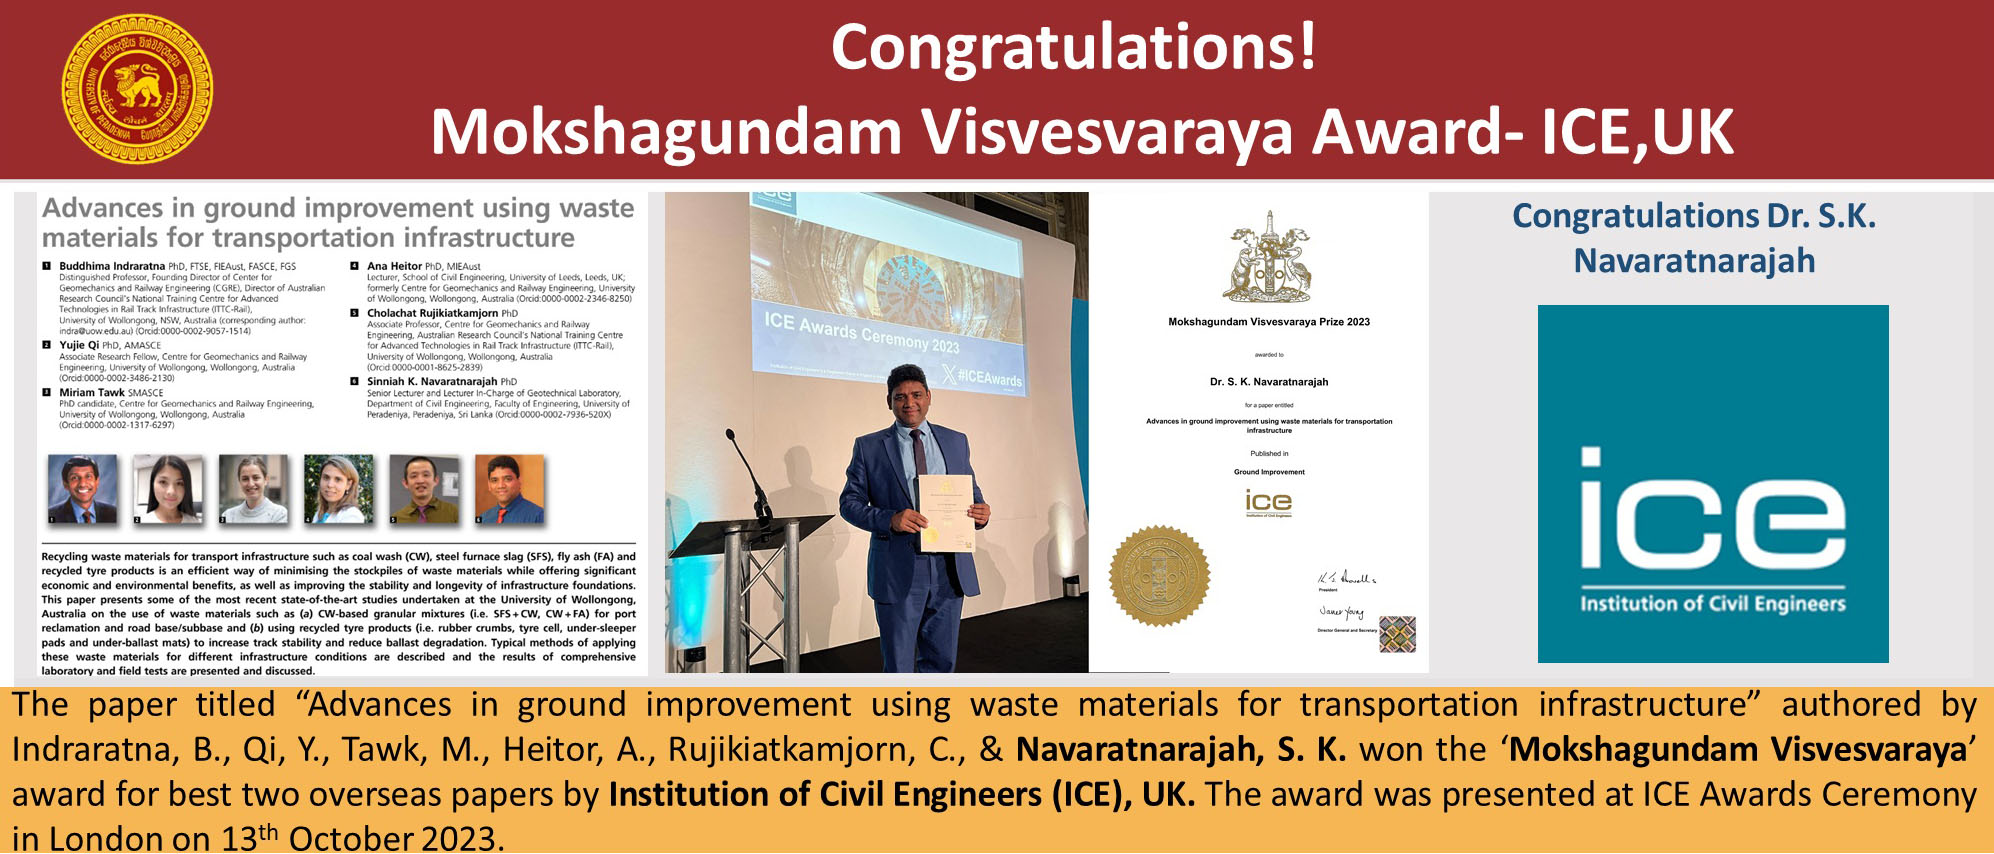 Navaratnarajah, S. K. won - Mokshagundam Visvesvaraya Award- ICE,UK 